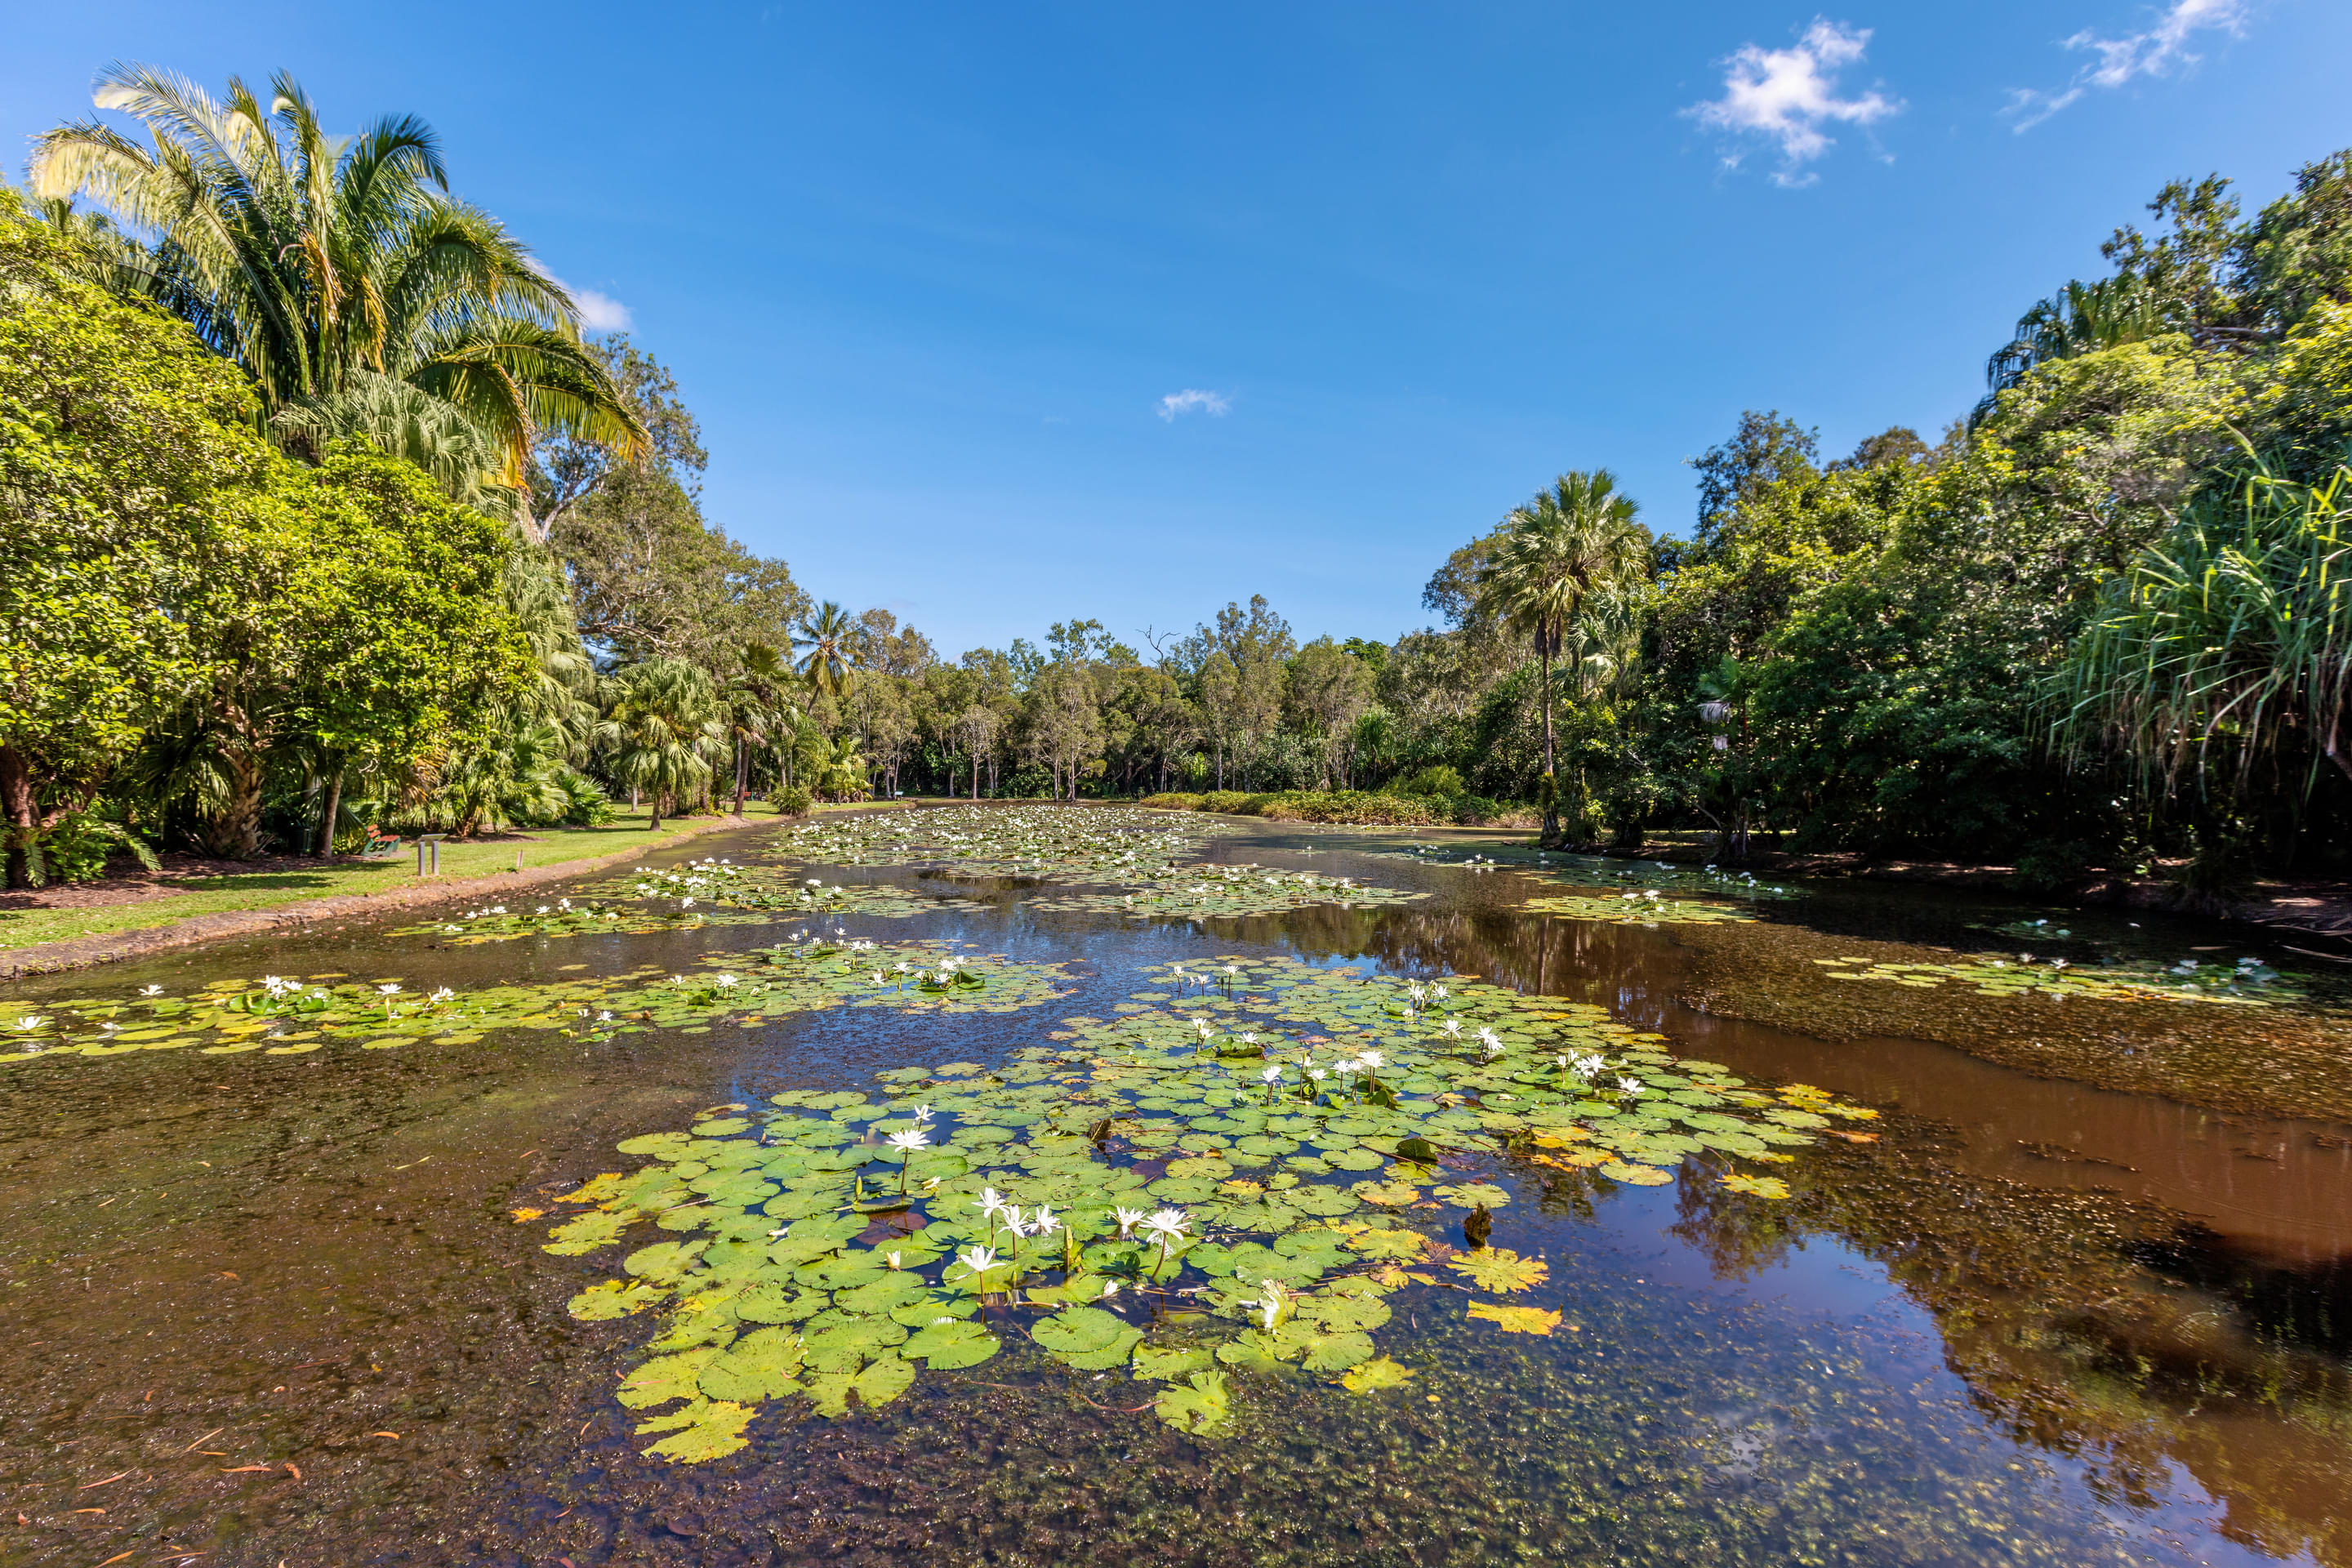 Cairns Botanic Gardens Overview